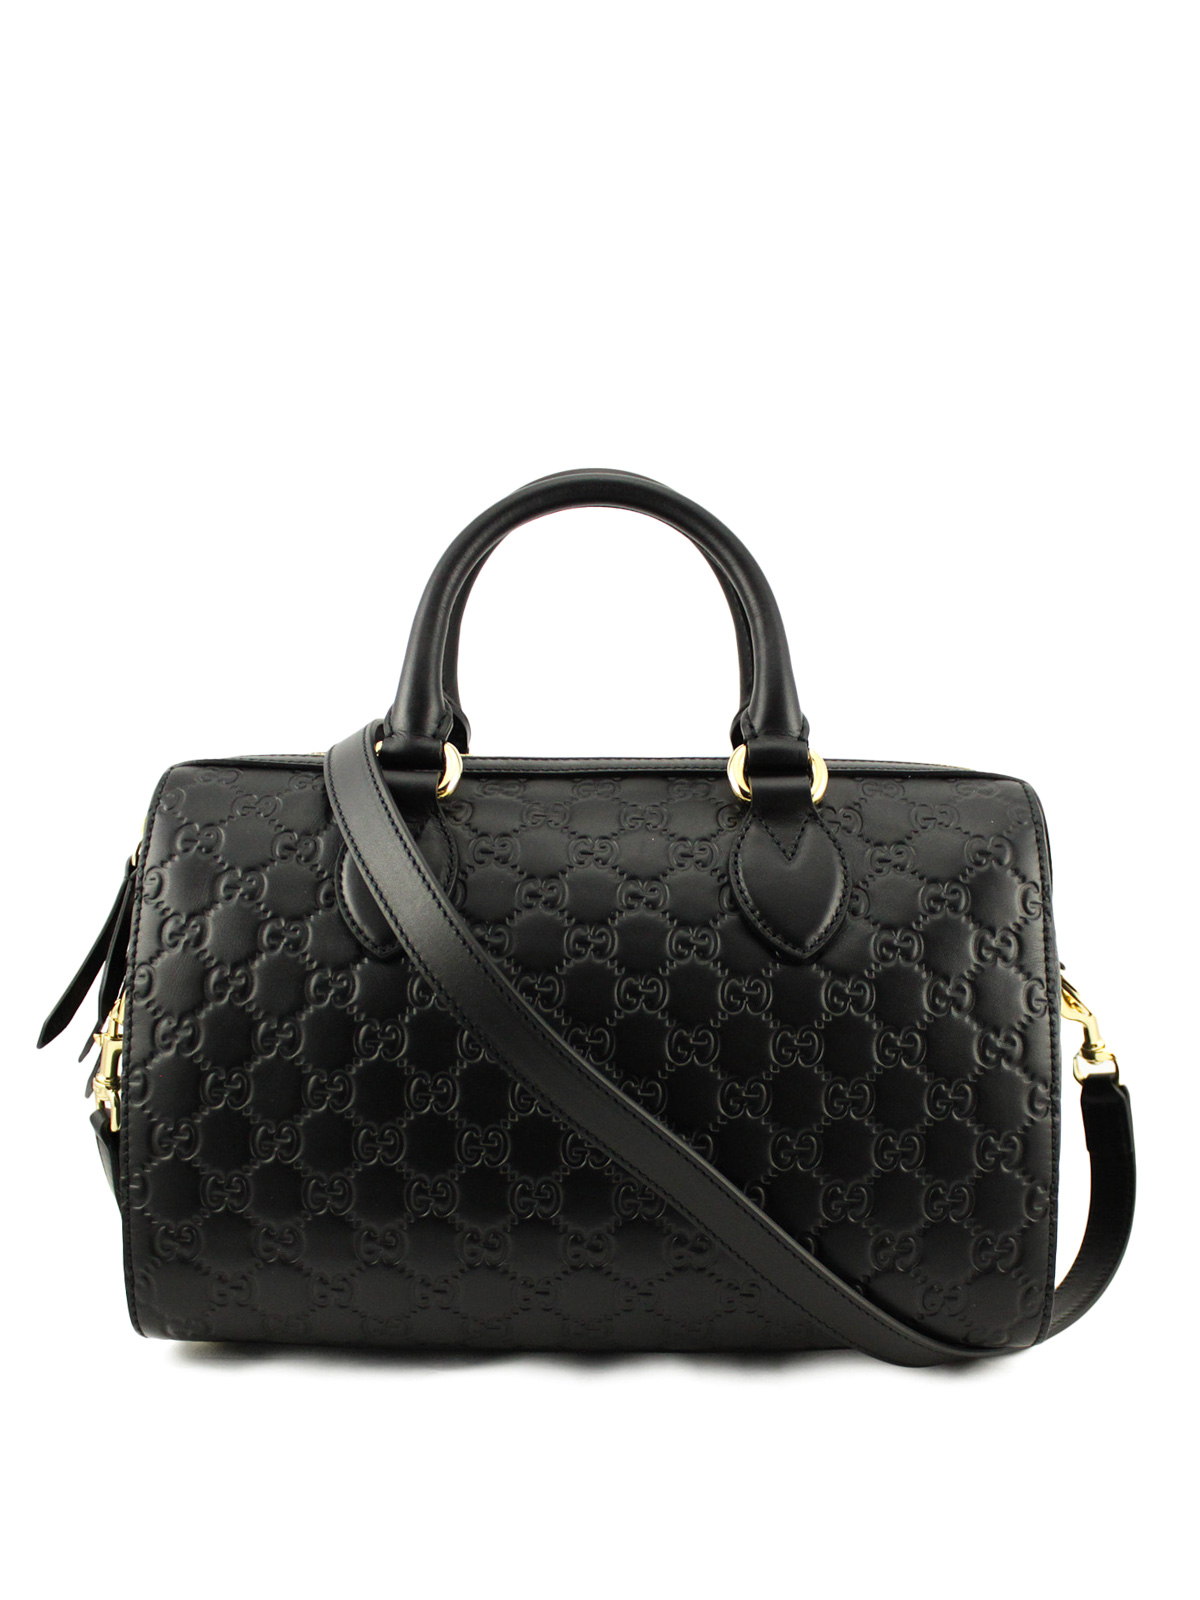 gucci signature handbag